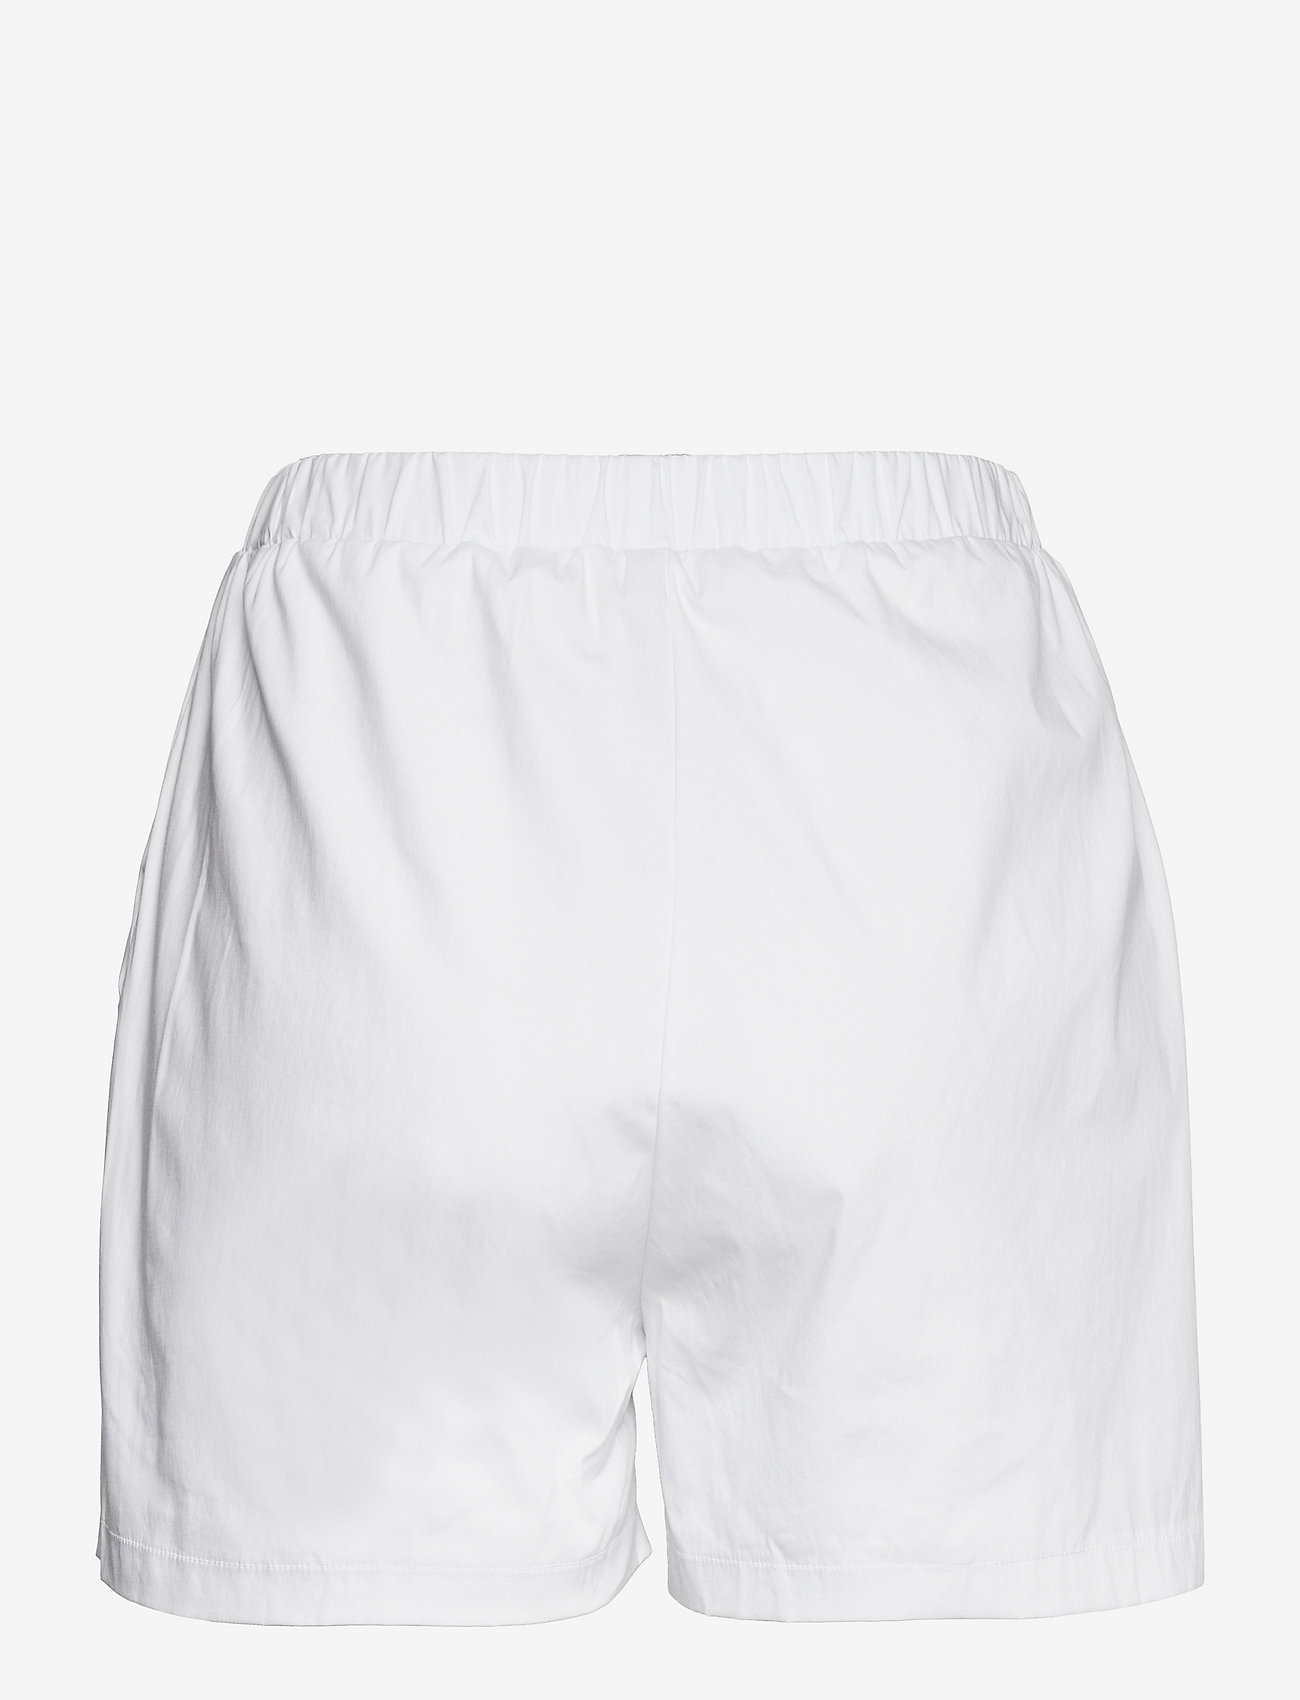 OW Collection - HELENE Shorts - shorts - white - 1